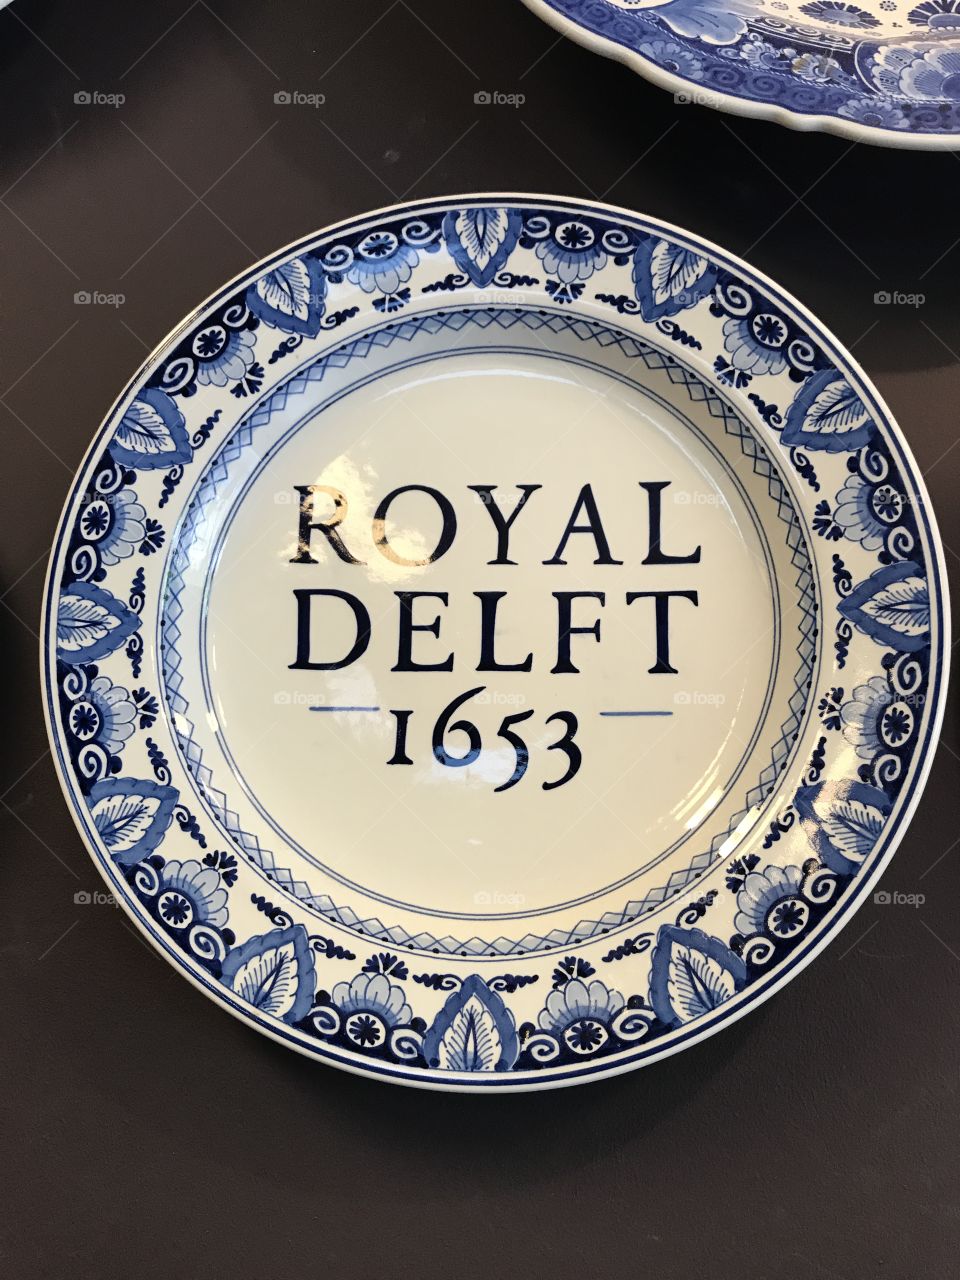 Royal Delft
China
Blue
Factory 
Dish
